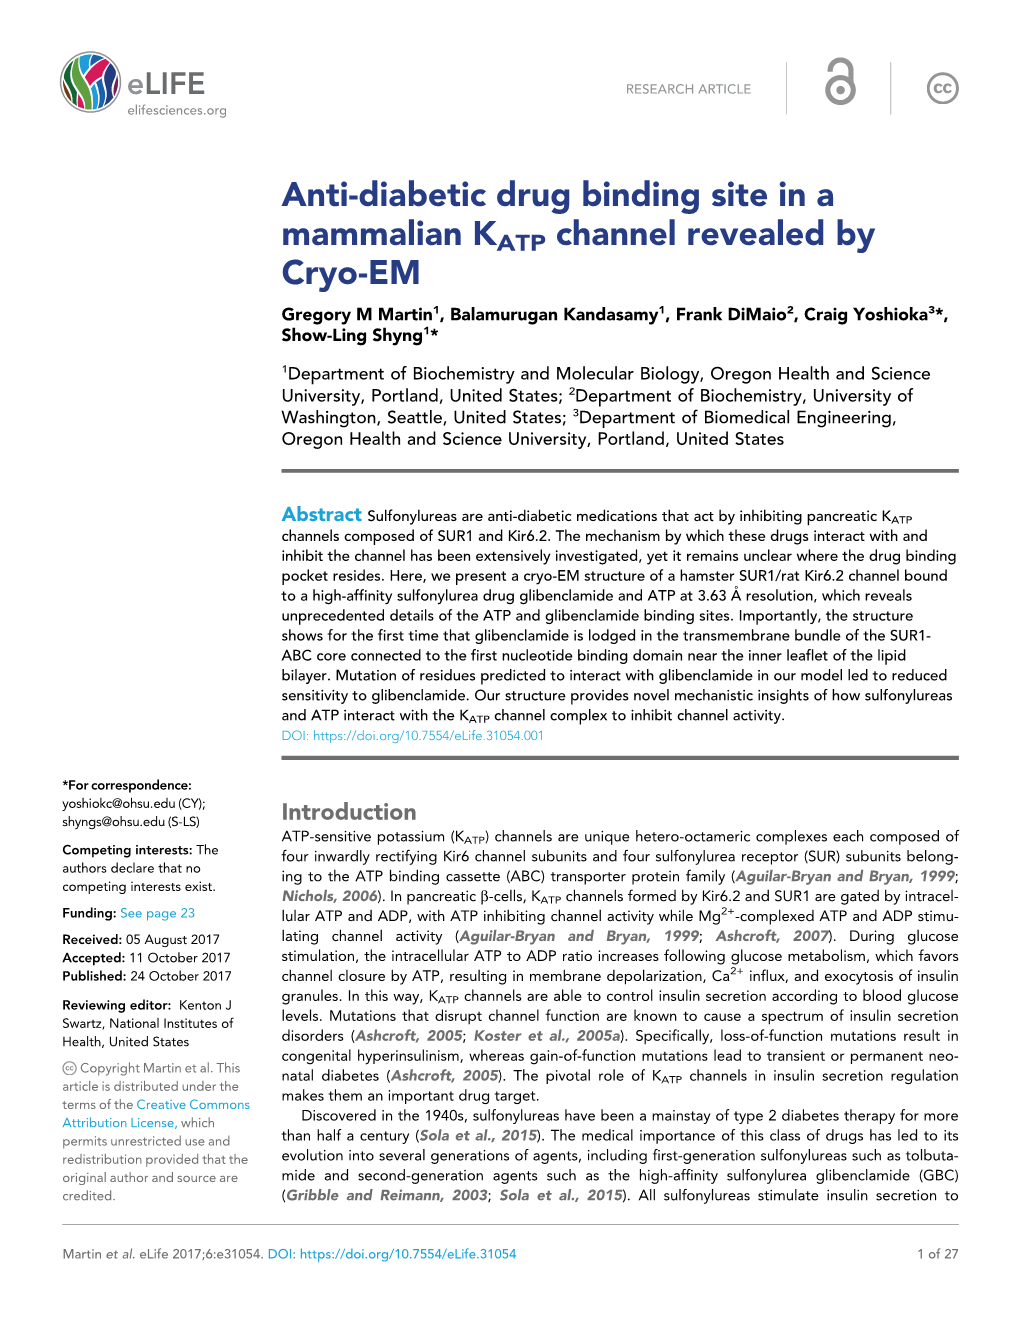 Anti-Diabetic Drug Binding Site in a Mammalian KATP Channel